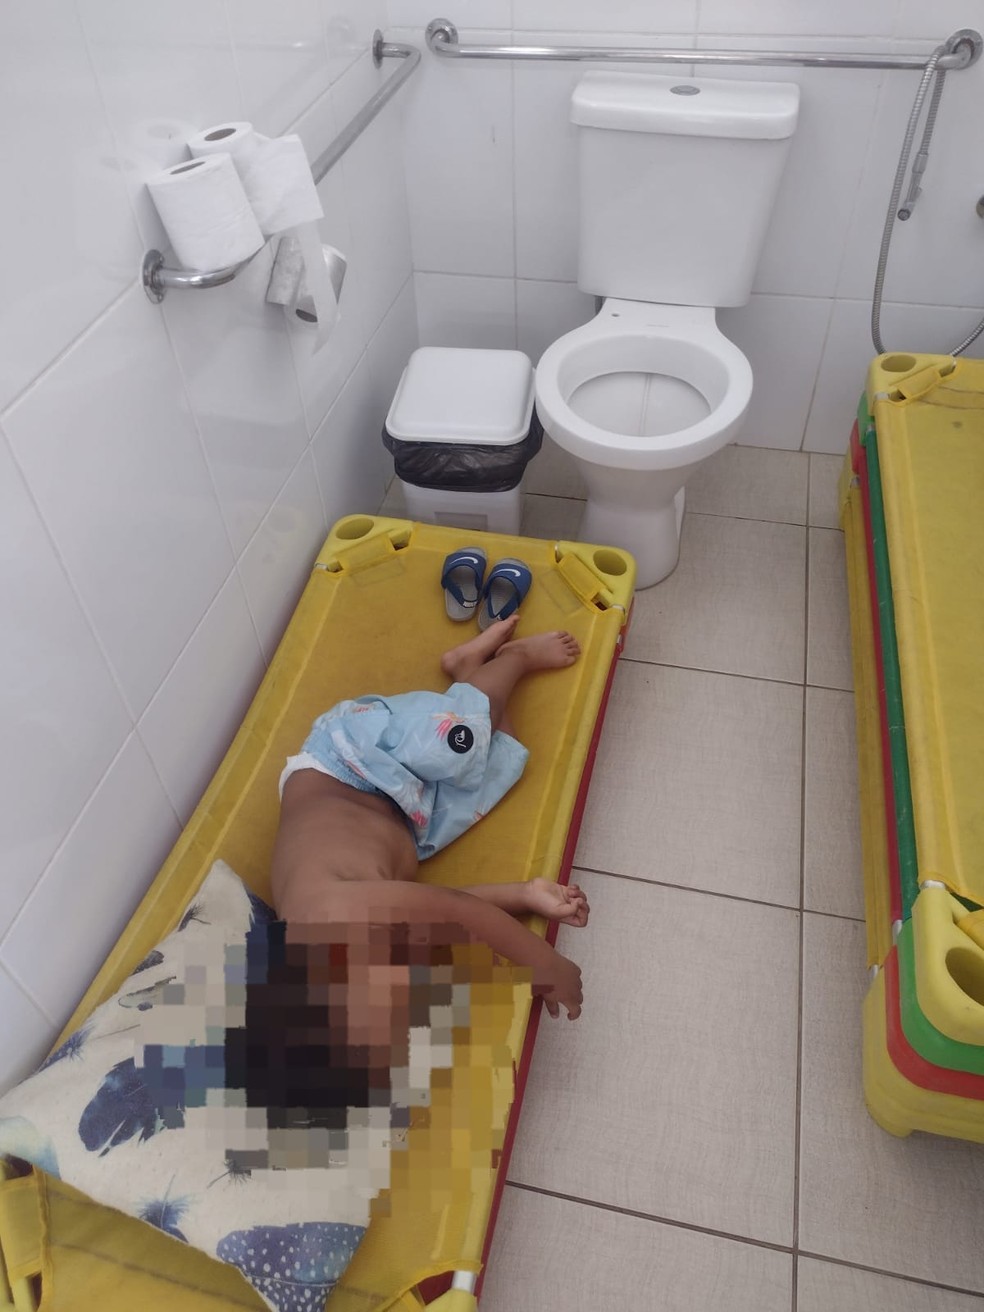 Menino de dois anos foi colocado para dormir no banheiro em uma escola de Pains  — Foto: Milene Silva/Arquivo Pessoal